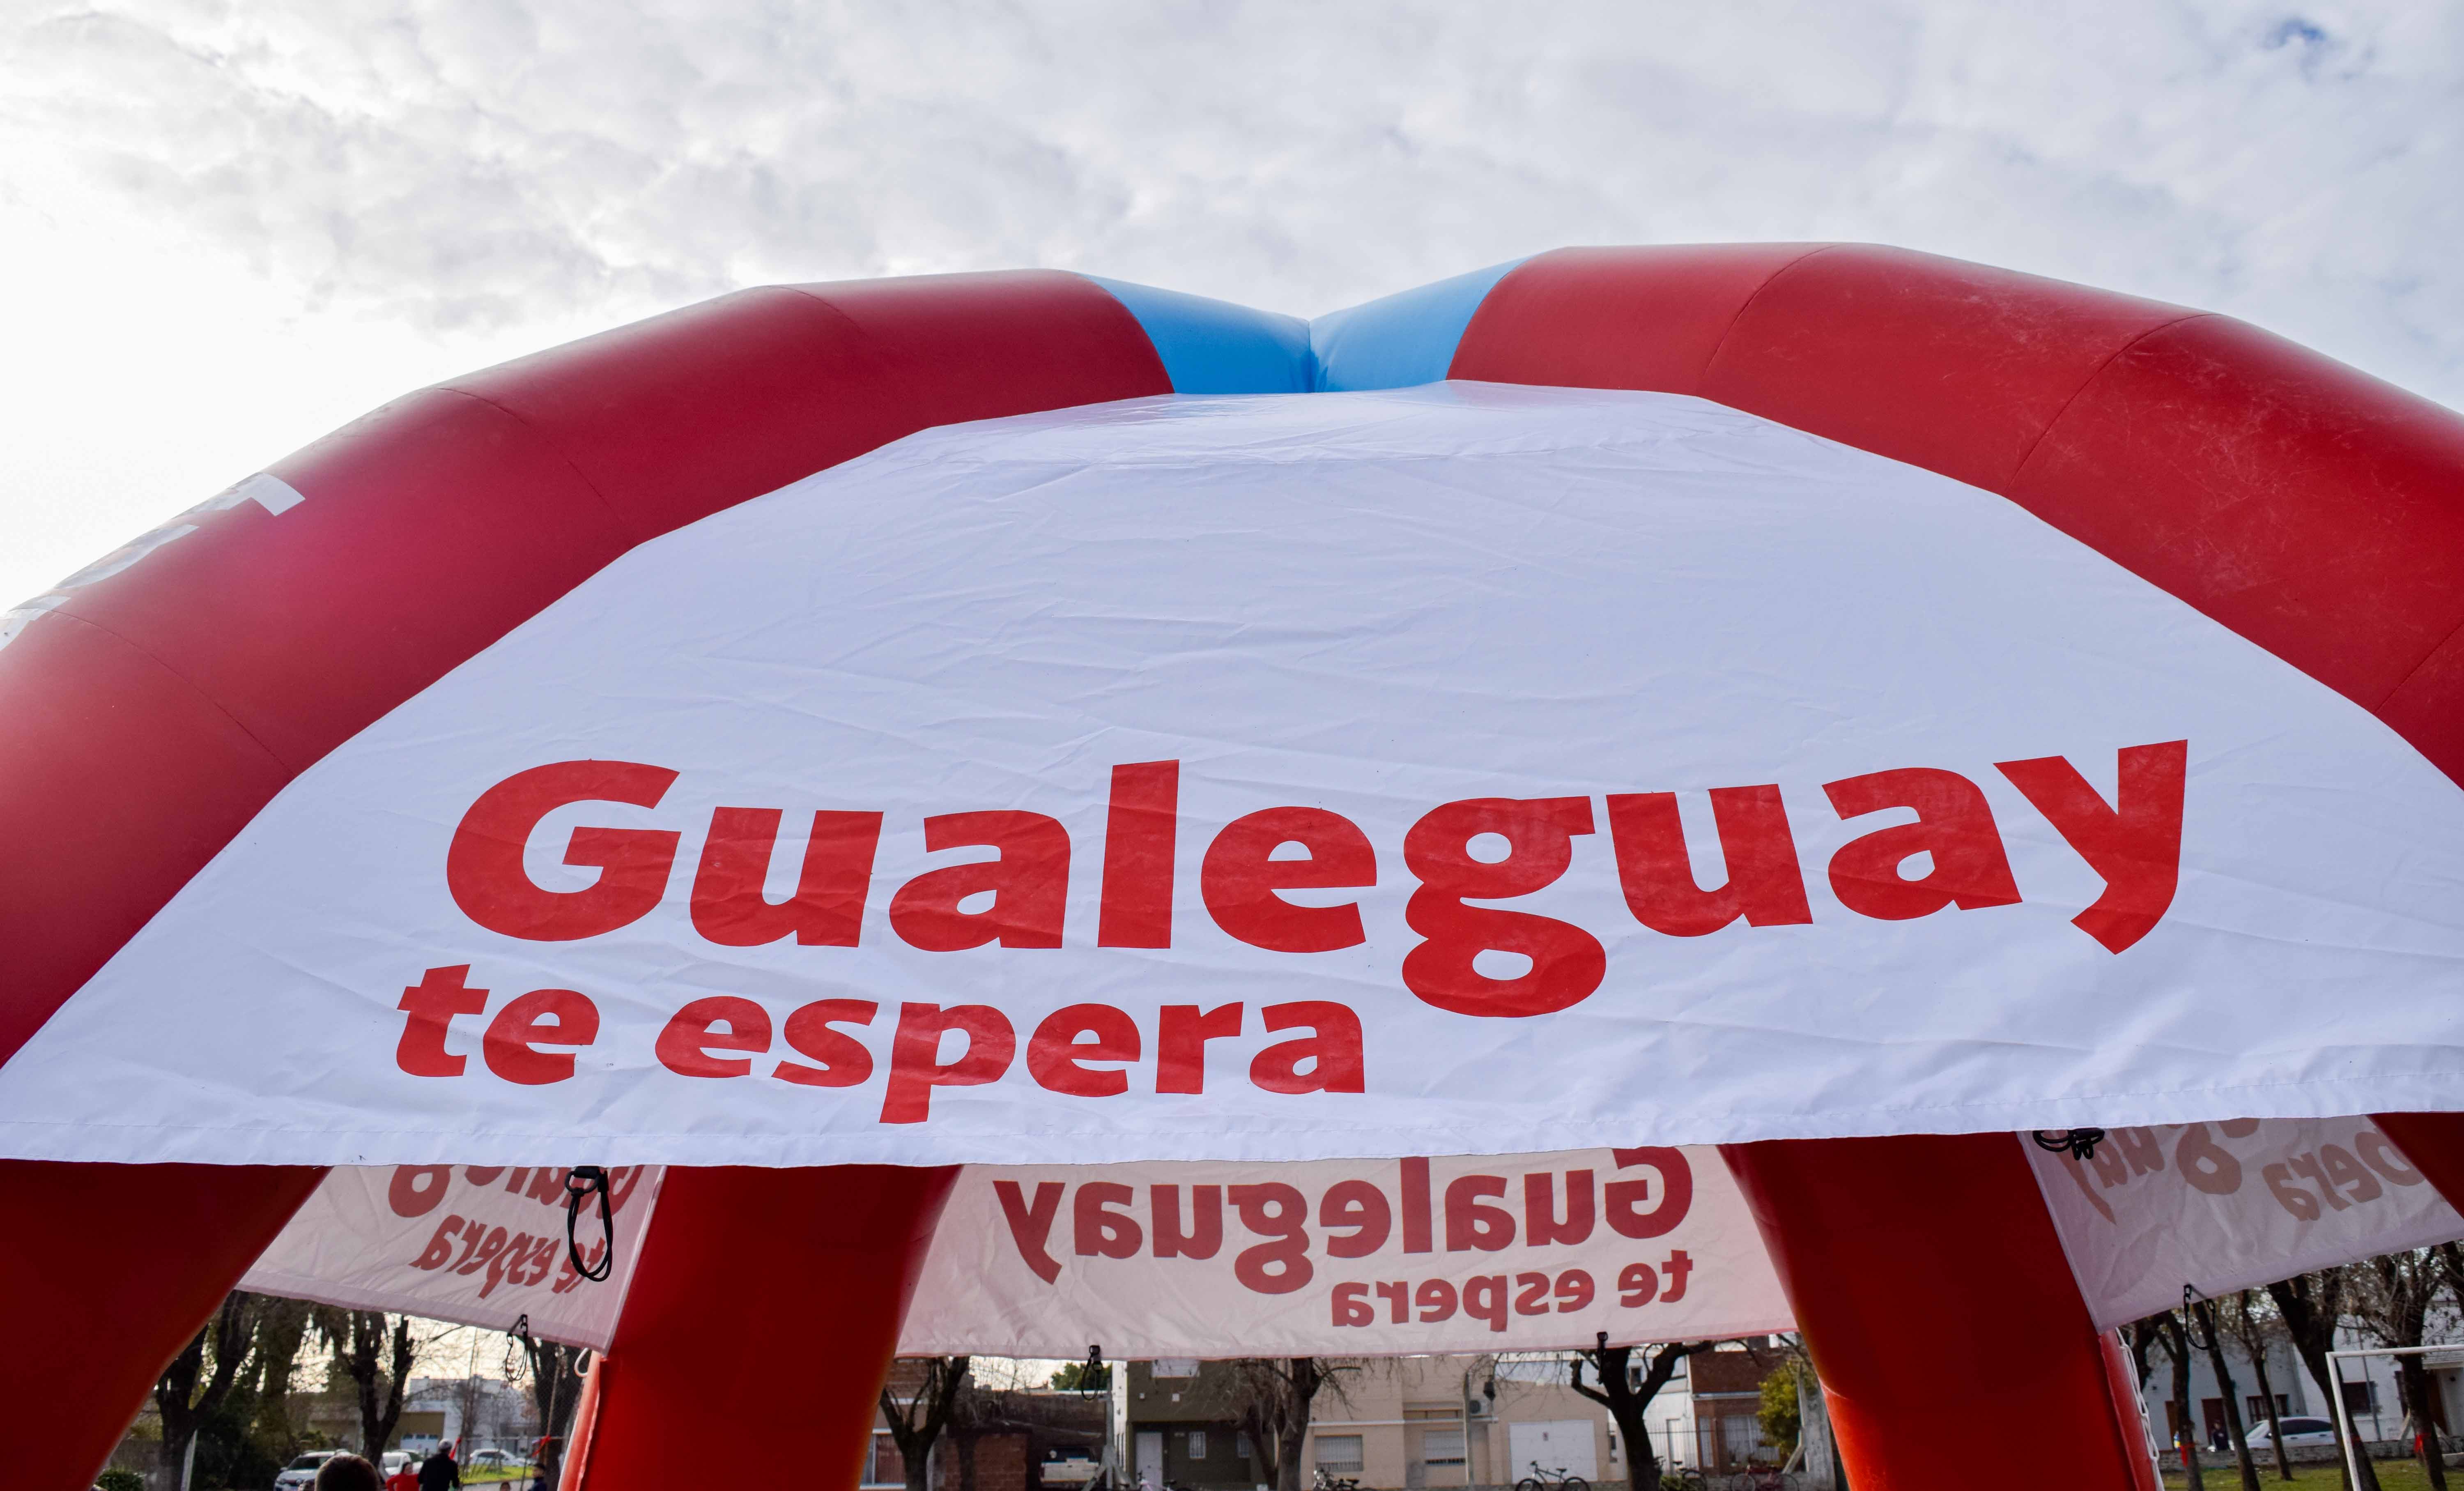 Turismo Gualeguay